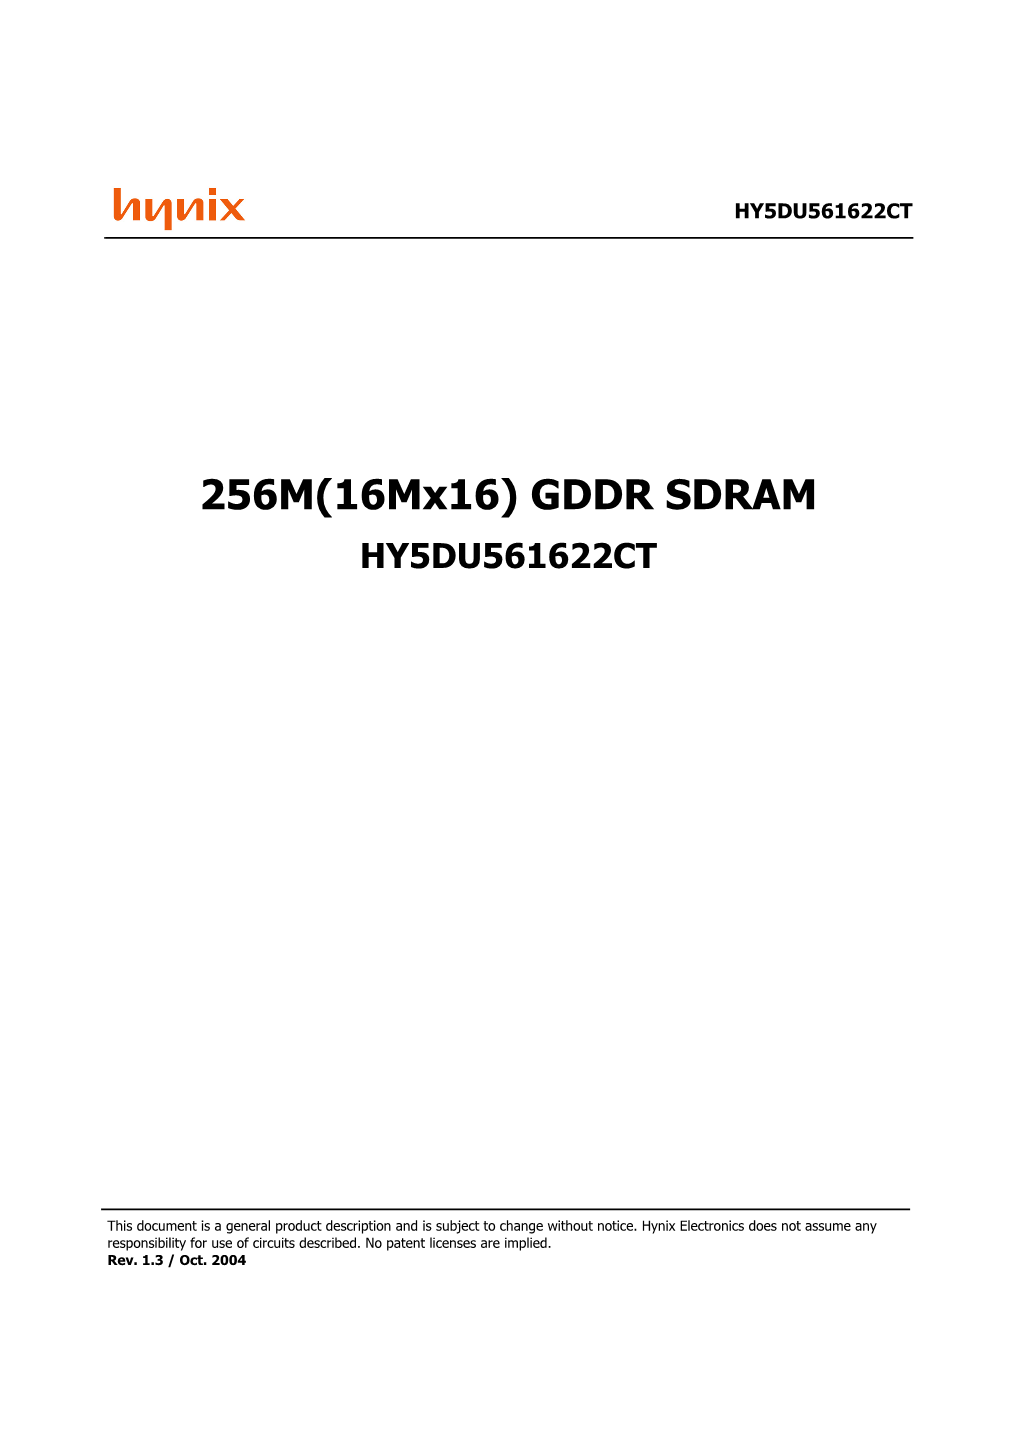 256M(16Mx16) GDDR SDRAM HY5DU561622CT